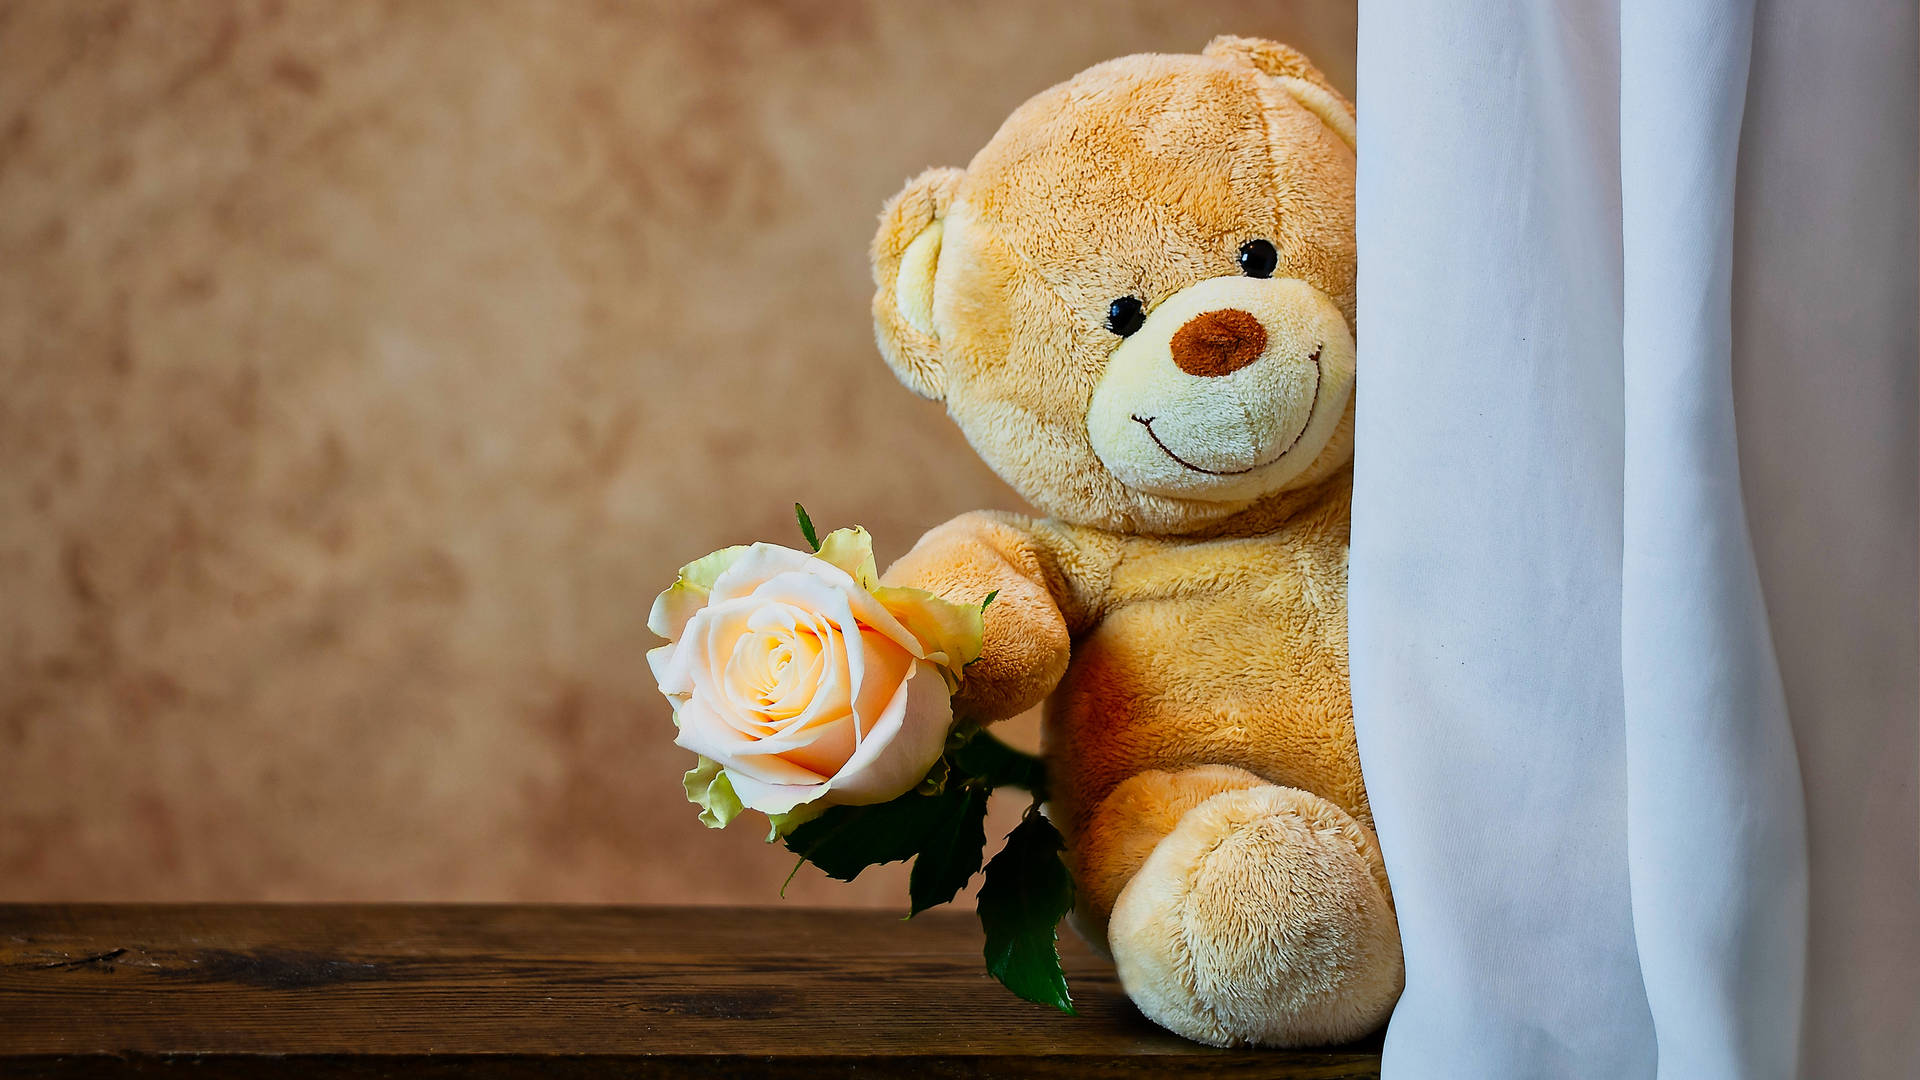 Stuffed Cute Teddy Bear Background